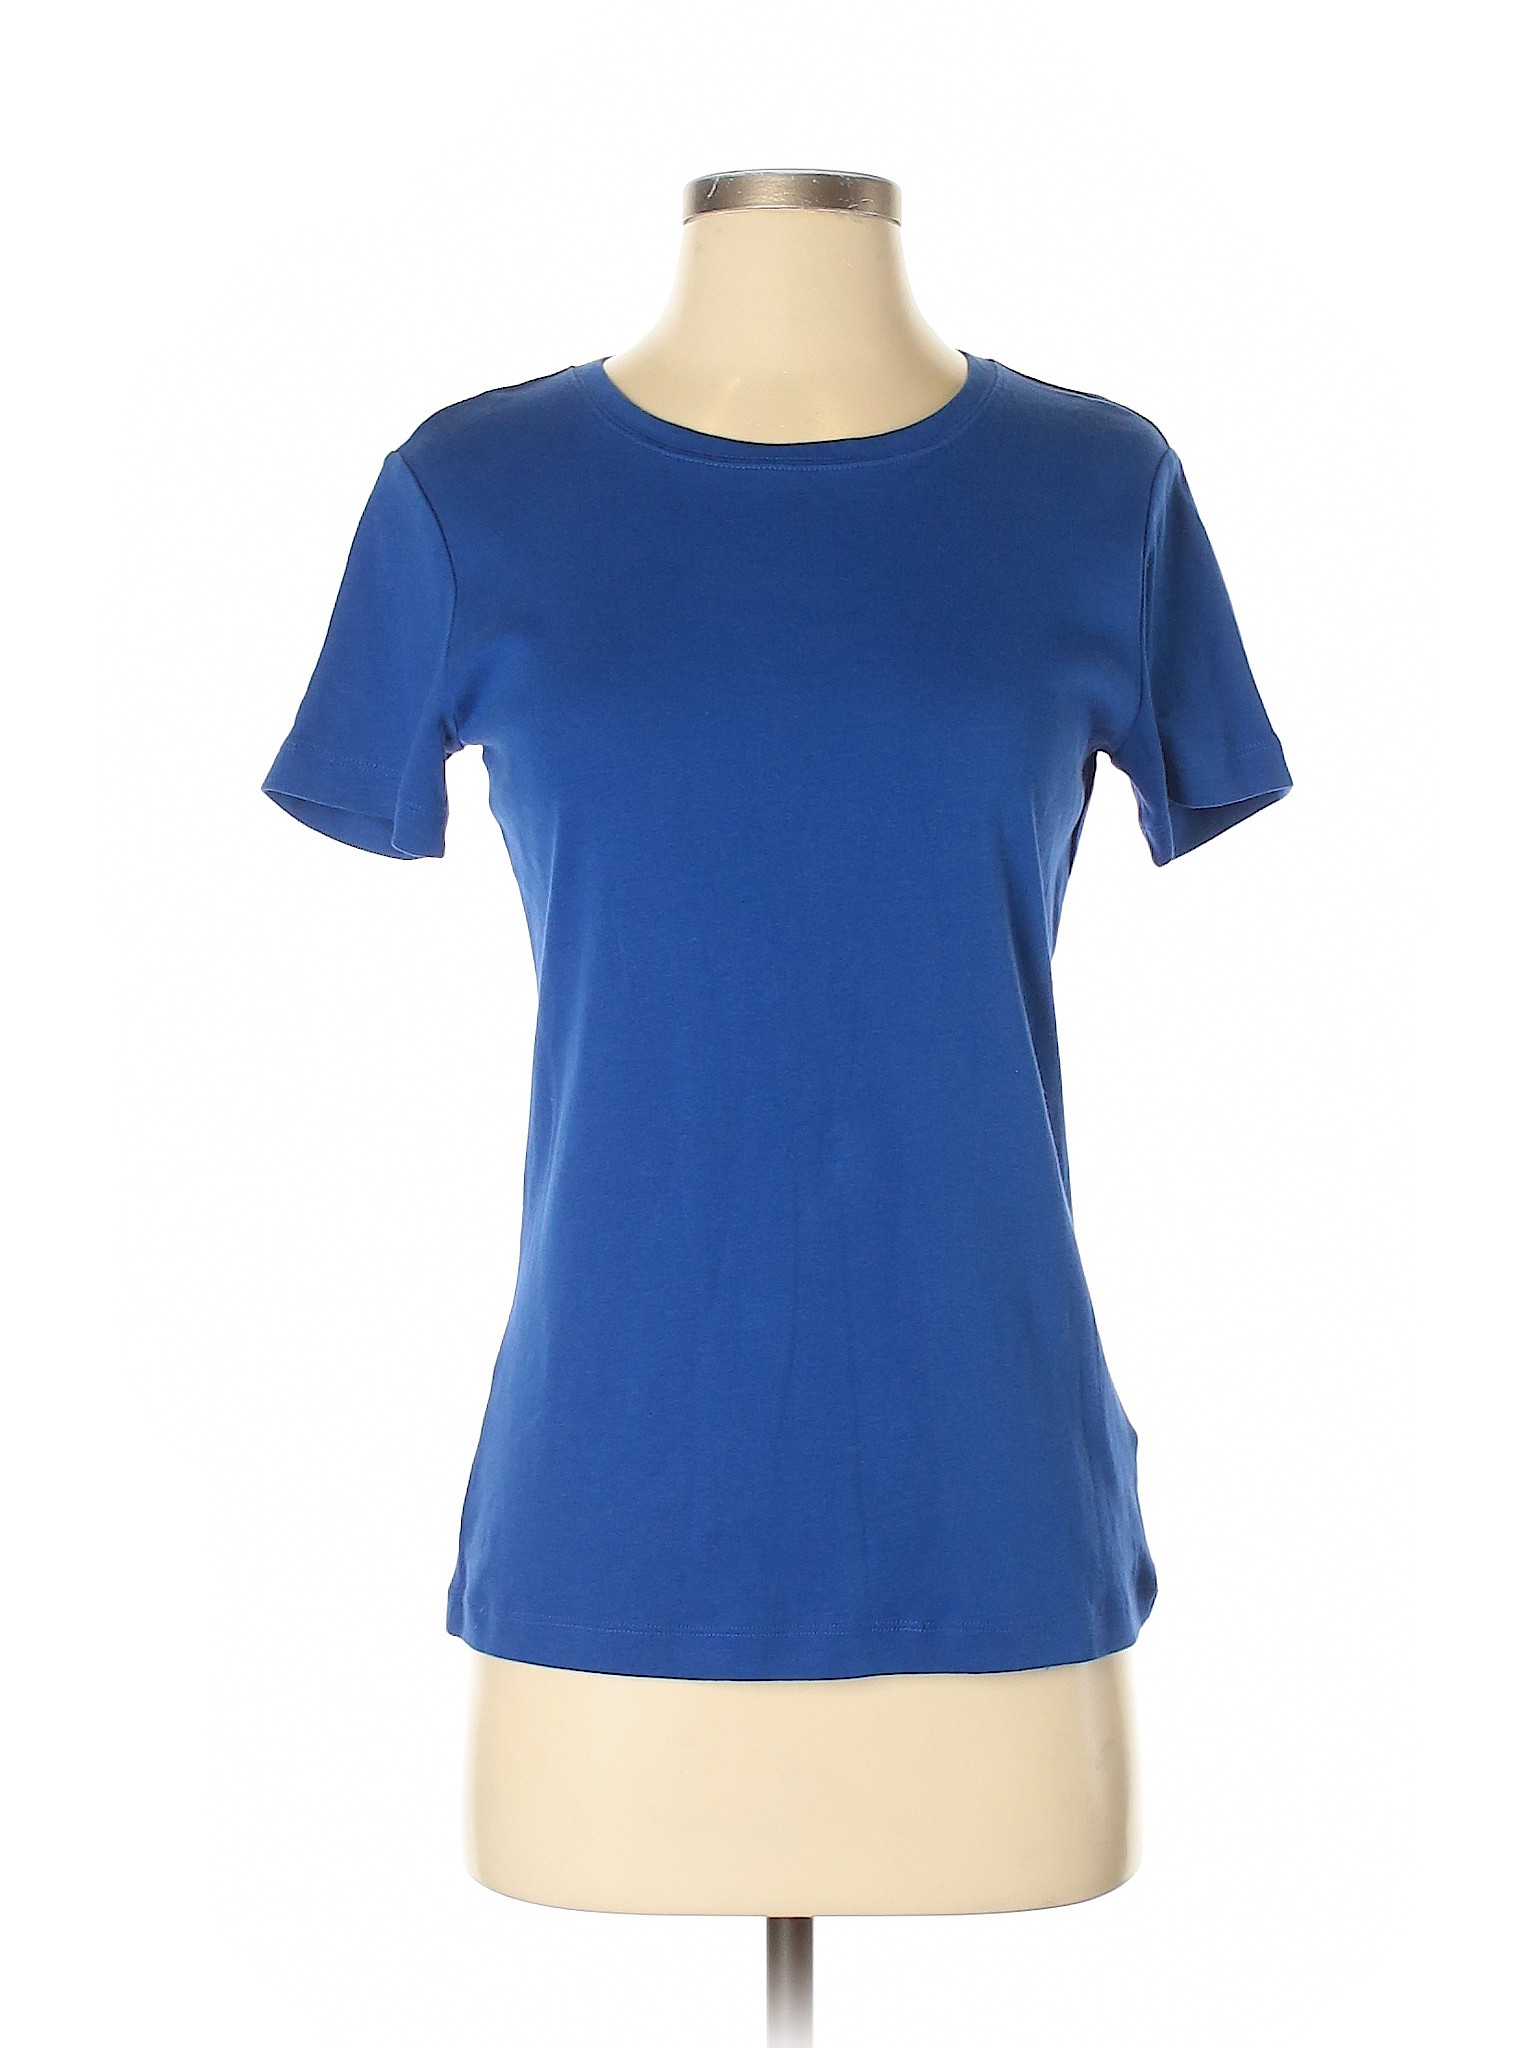 Anne Klein Sport Women Blue Active T-Shirt S | eBay